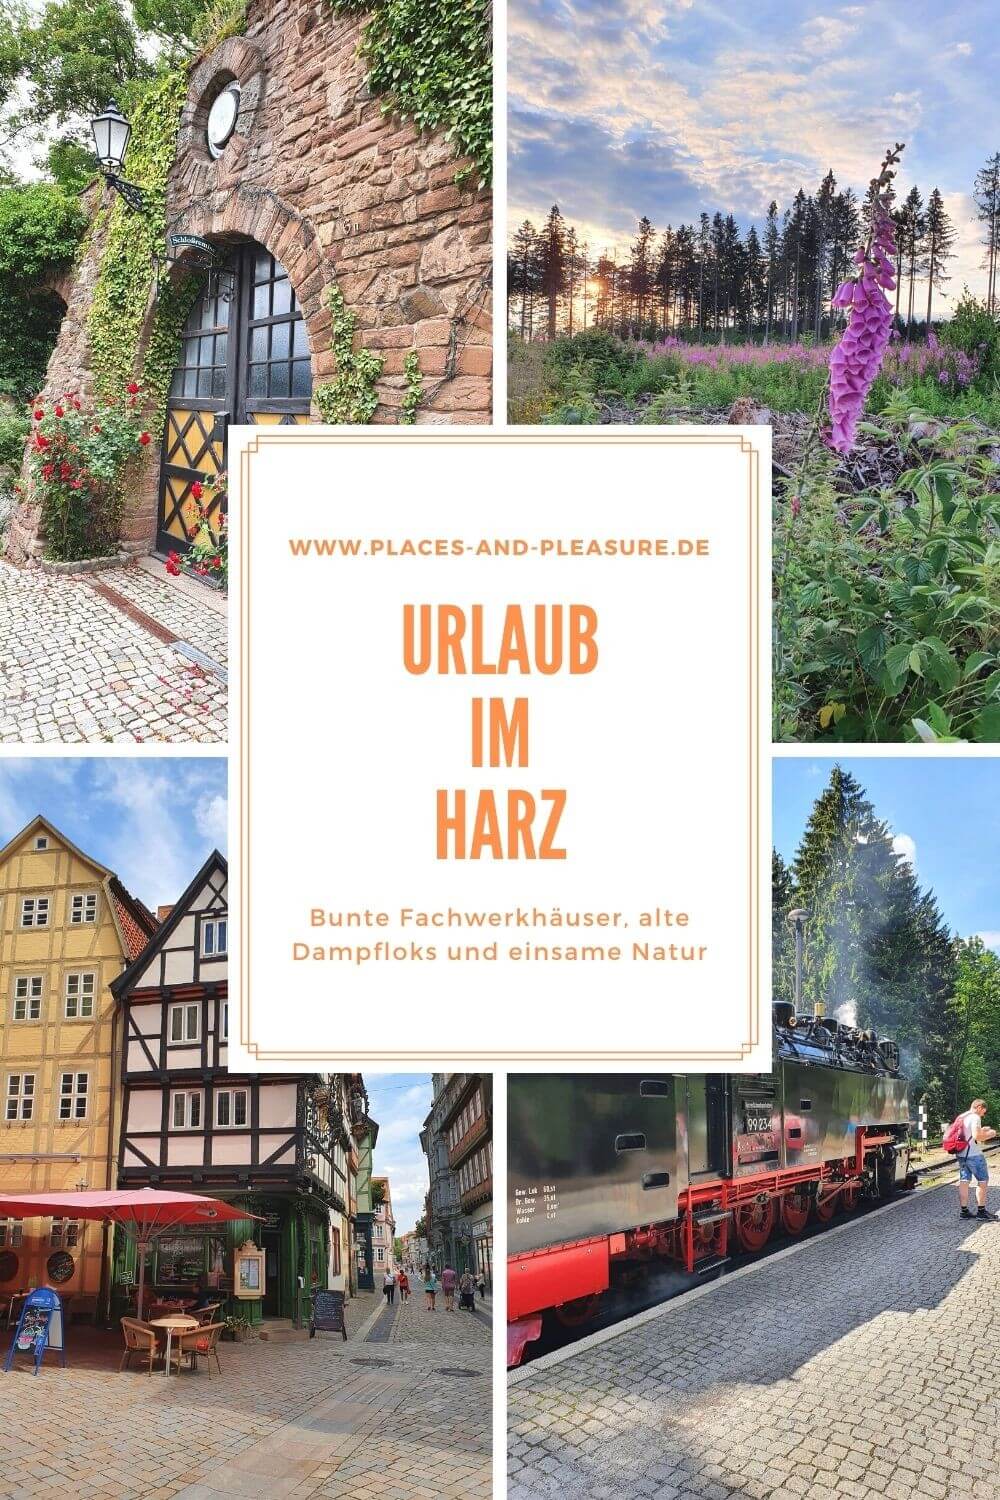 Viele Wandermöglichkeiten, hübsche Städtchen, tolle Erlebnisse und alte Traditionen – bei einem Urlaub im Harz gibt es einiges zu entdecken. #Harz #Urlaub #Deutschland #Reisetipp